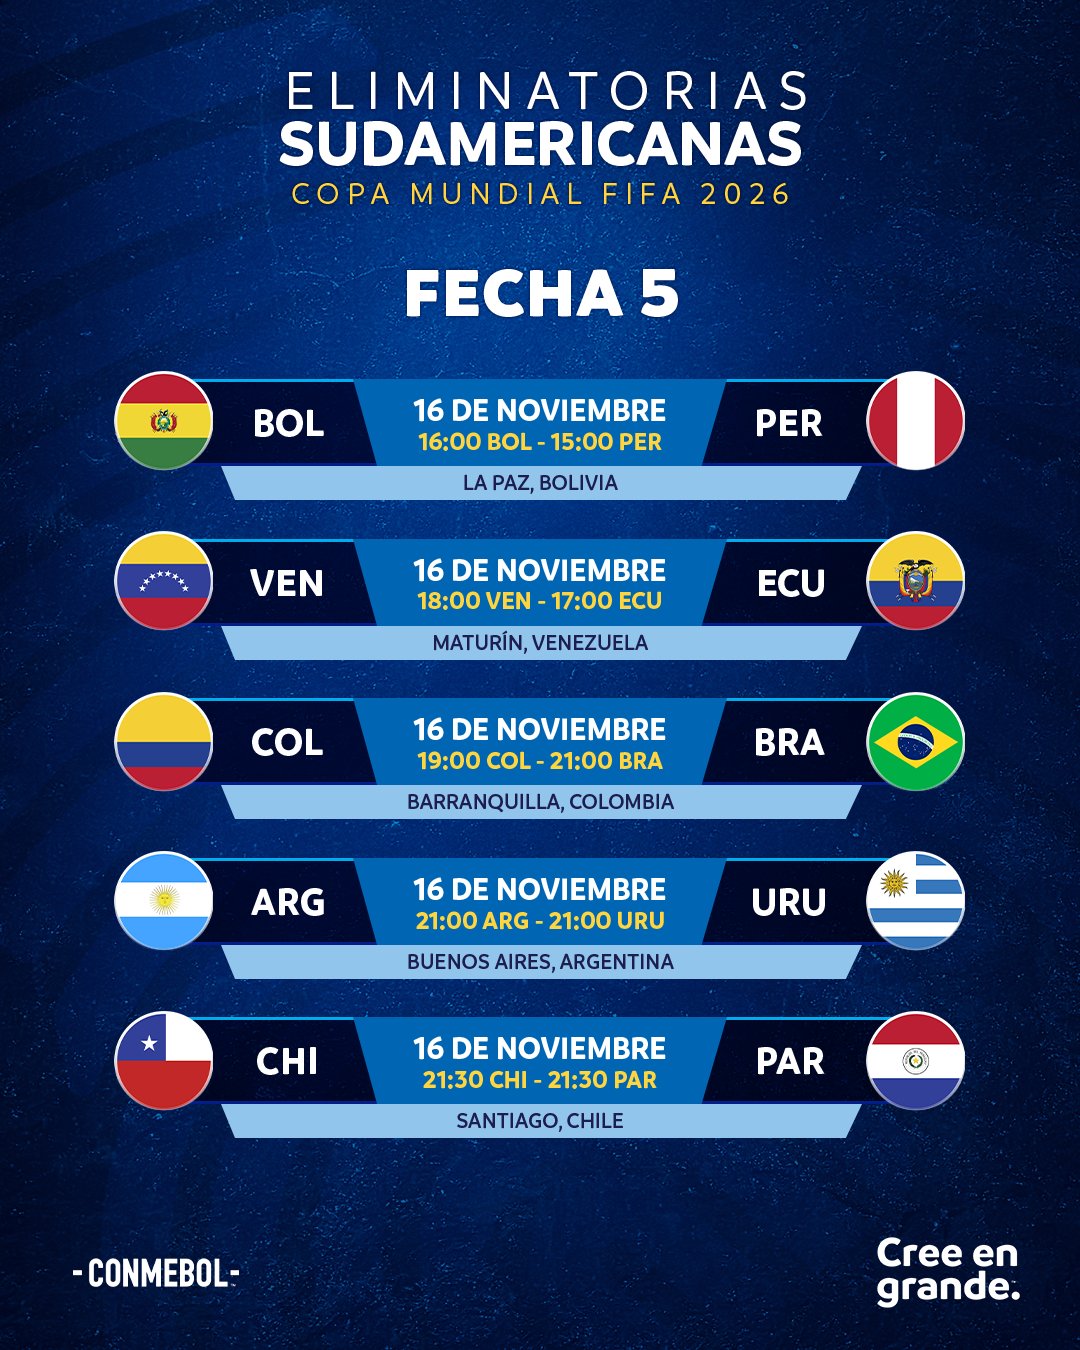 CONMEBOL Copa América™️ on X: 📆⚽ ¡𝙃𝙤𝙮 𝙨𝙚 𝙘𝙞𝙚𝙧𝙧𝙖 𝙡𝙖 𝙁𝙖𝙨𝙚  𝙙𝙚 𝙂𝙧𝙪𝙥𝙤𝙨! Estos son los partidos de la fecha 5️⃣ de la  #CAFutsalFem 🔛 📆⚽ 𝙃𝙤𝙟𝙚 𝙨𝙚 𝙚𝙣𝙘𝙚𝙧𝙧𝙖 𝙖 𝙁𝙖𝙨𝙚 𝙙𝙚